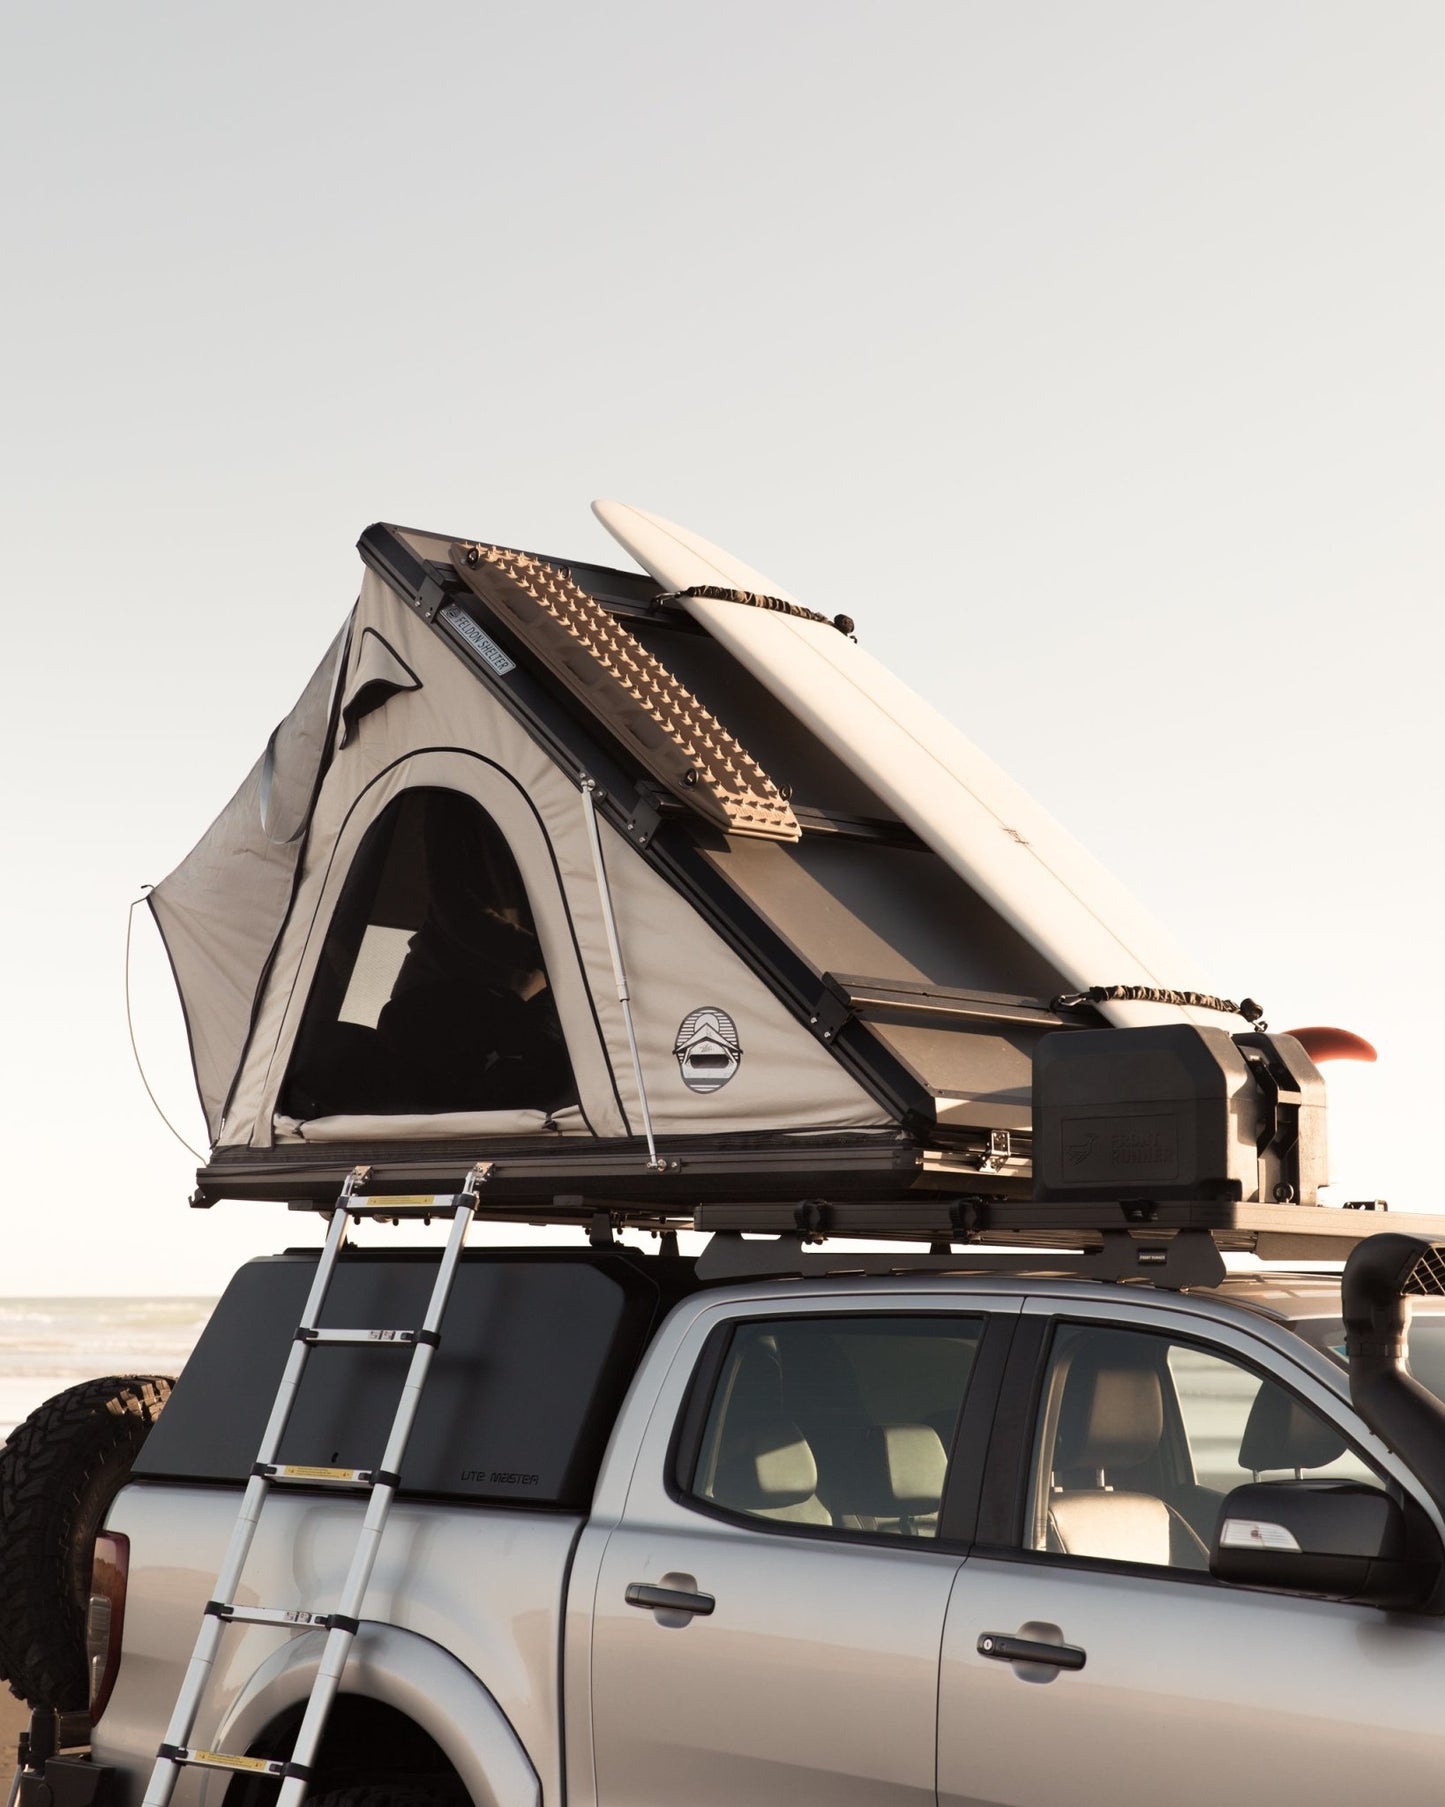 Feldon Shelter - Feldon Shelter Hawk's Nest Hard Shell Rooftop Tent - Low-Pro | Stoke Equipment Co Nelson